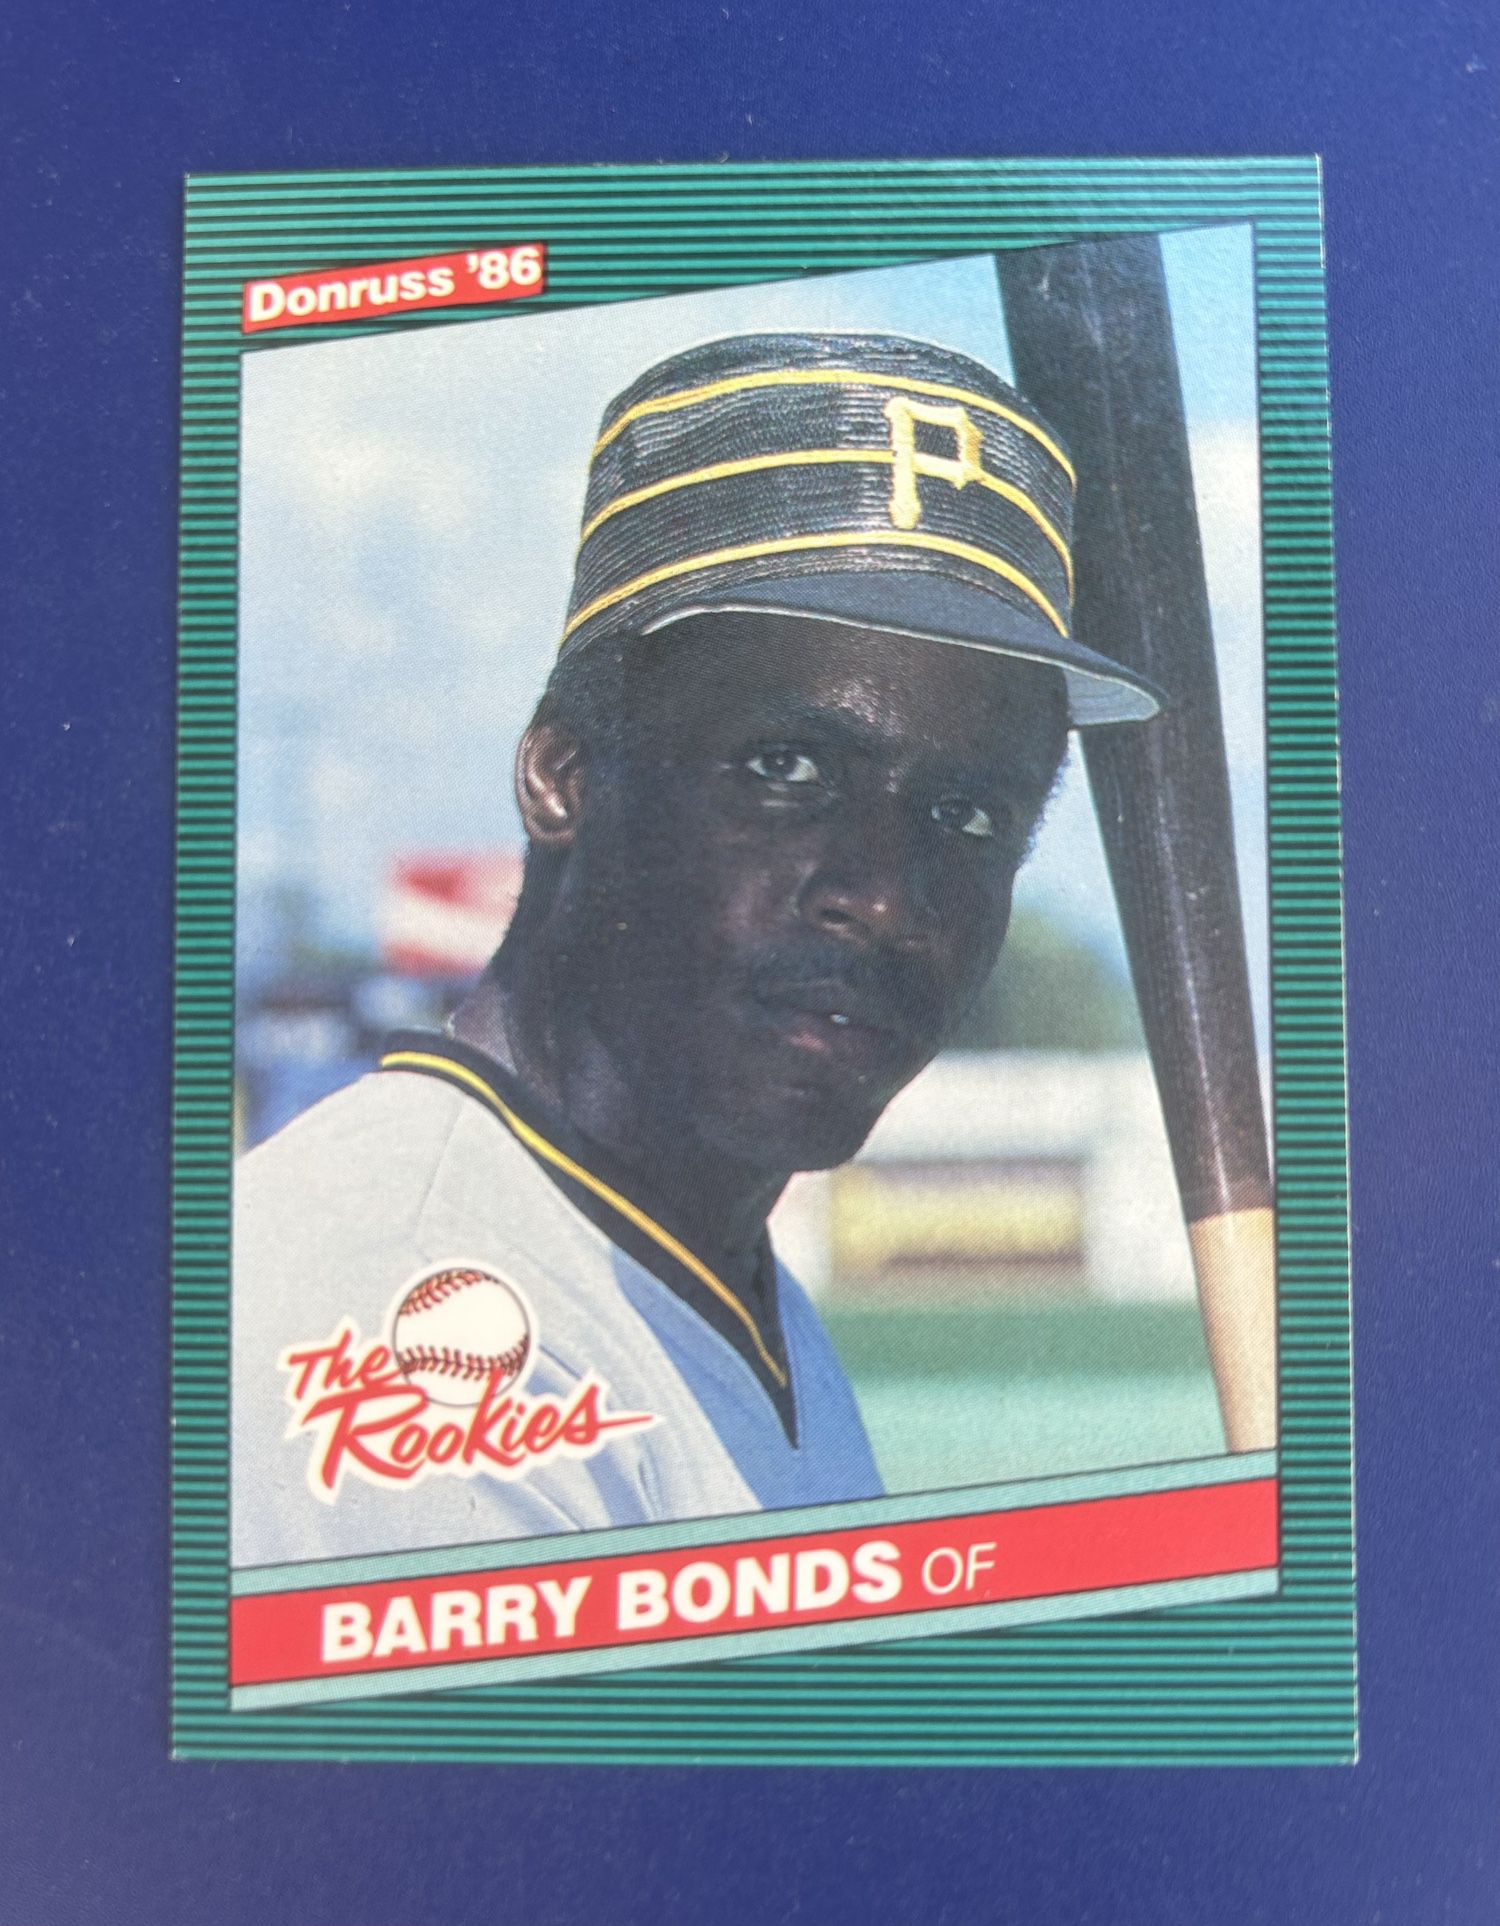 1986 Donruss Barry Bonds Rookie Baseball Card 